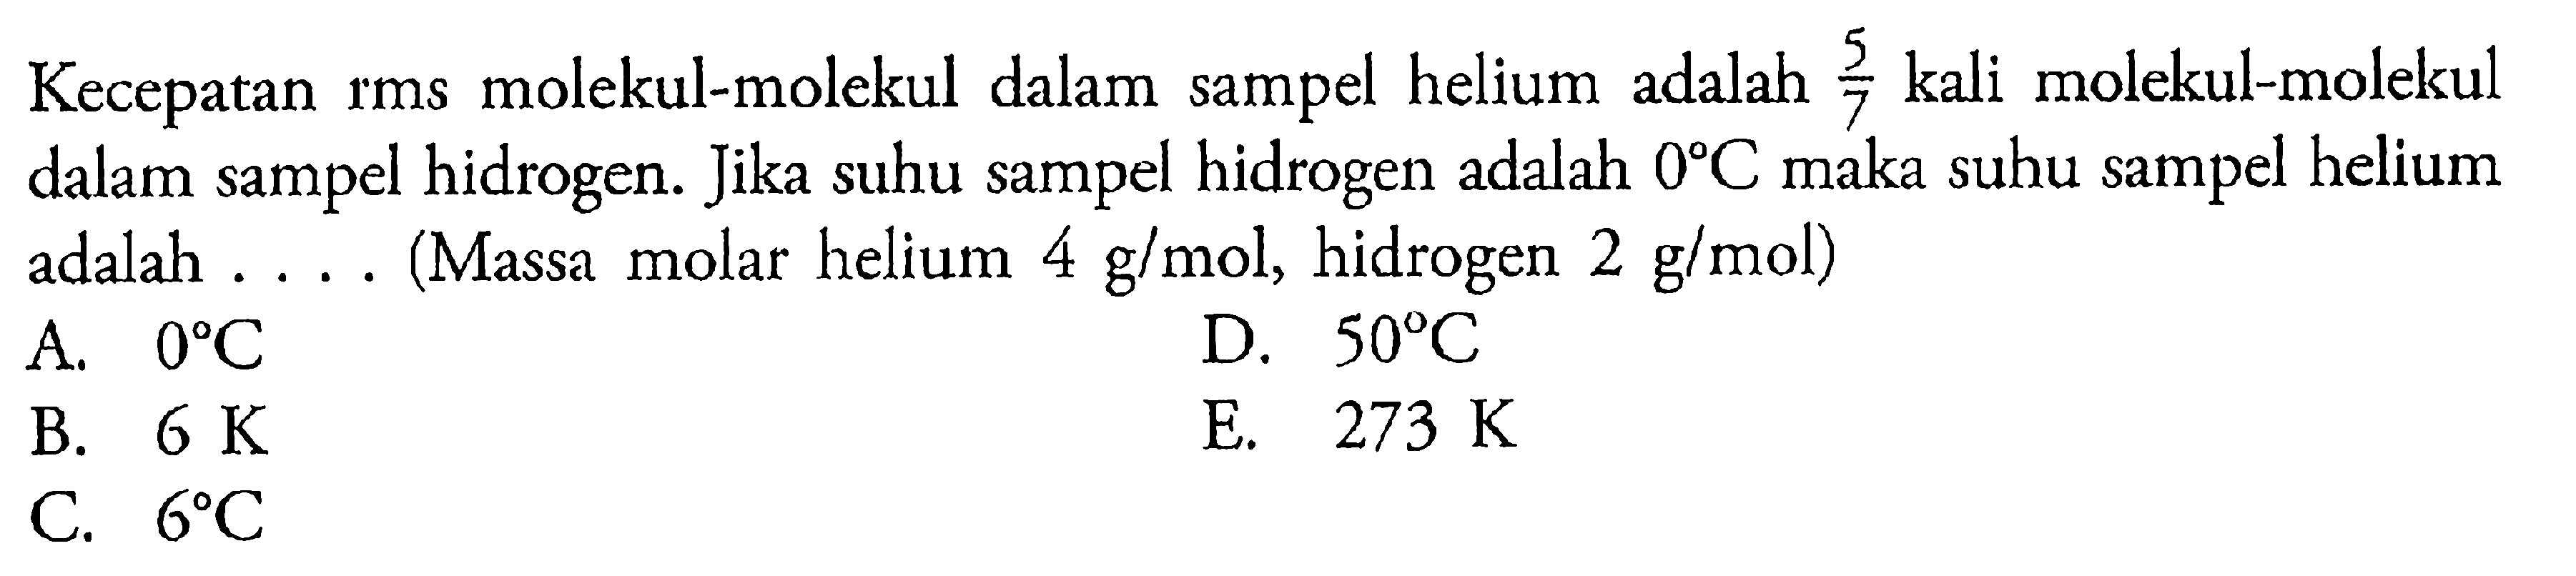 Kecepatan rms molekul-molekul dalam sampel helium adalah 5/7 kali molekkul-molekul dalam sampel hidrogen. Jika suhu sampel hidrogen adalah 0 C maka suhu sampel helium adalah .... (Massa molar helium 4 g/mol, hidrogen 2 g/mol)